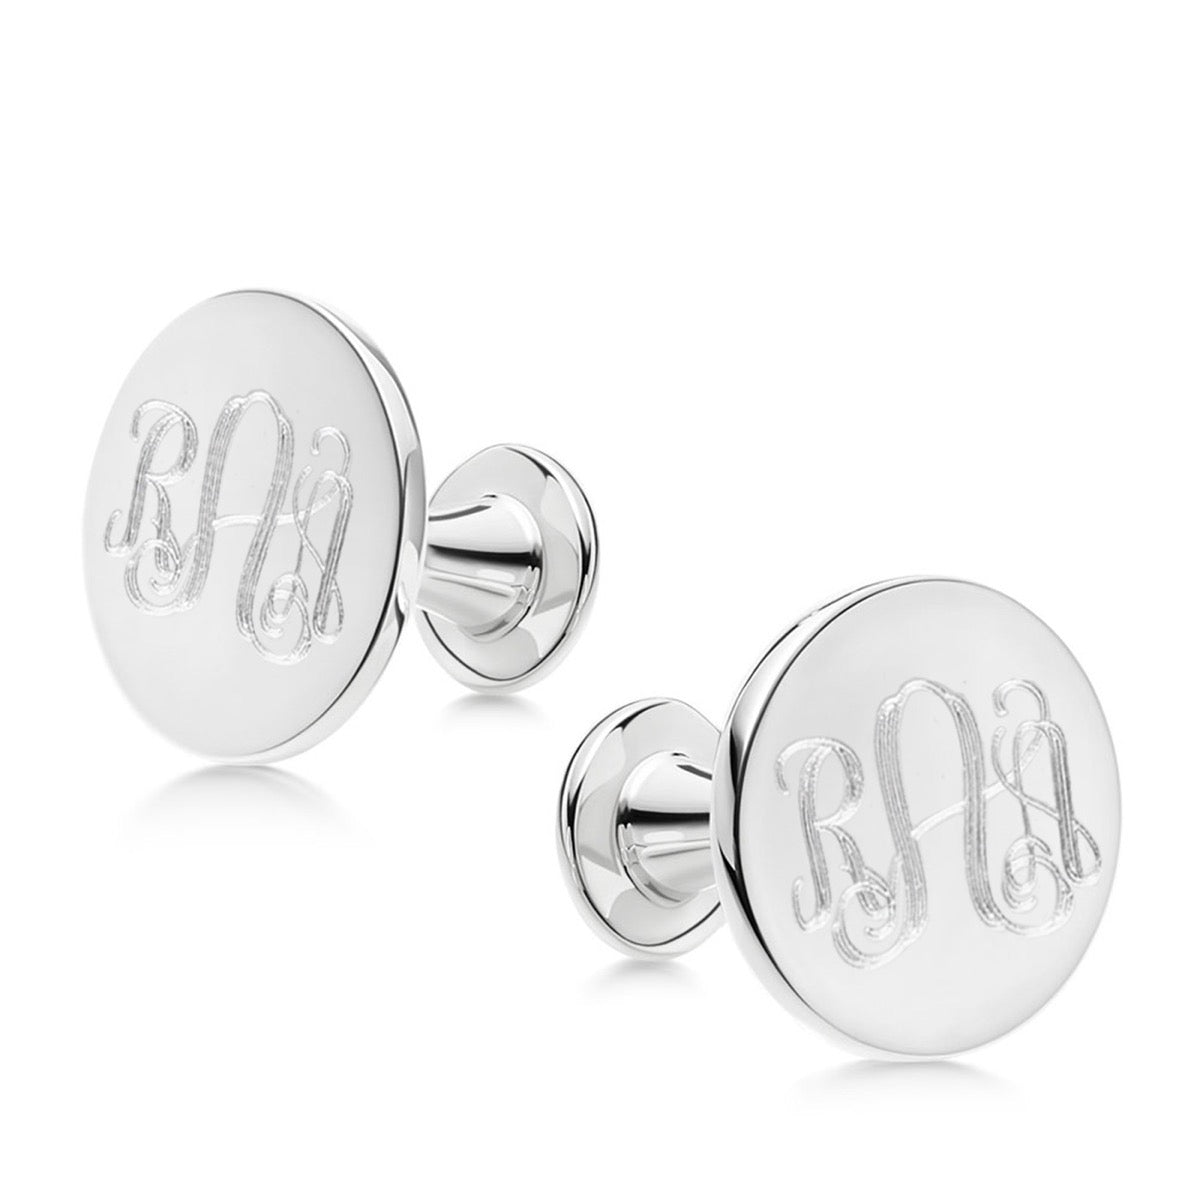 Silver Cufflinks Round Monogram| Hersey & Son Silversmiths